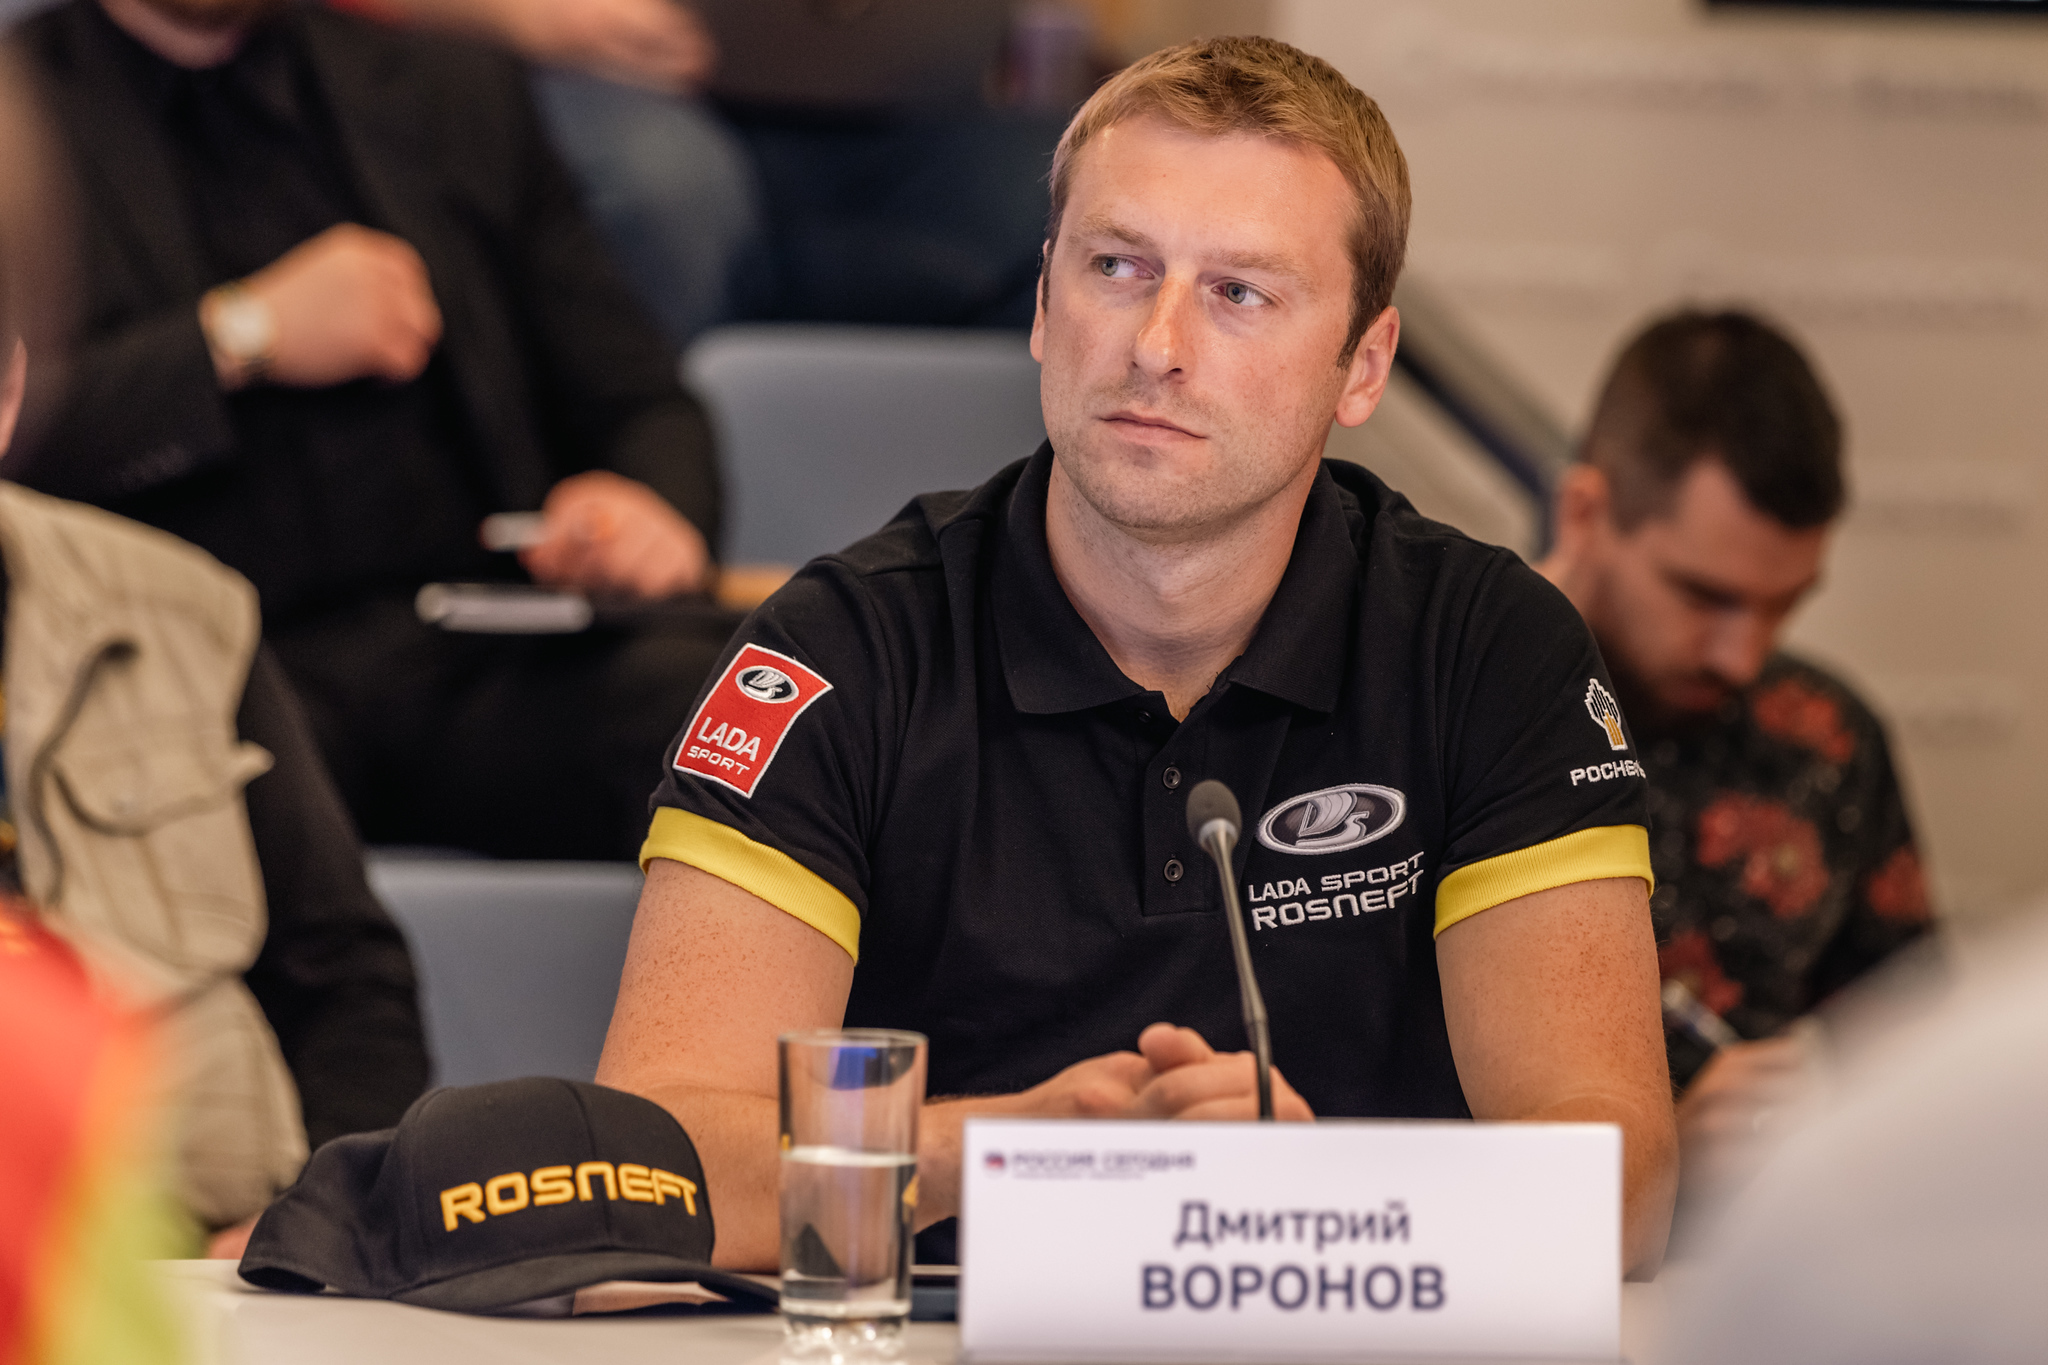 Дмитрий Воронов принял участие в пресс-конференции проекта "Шелковый путь".